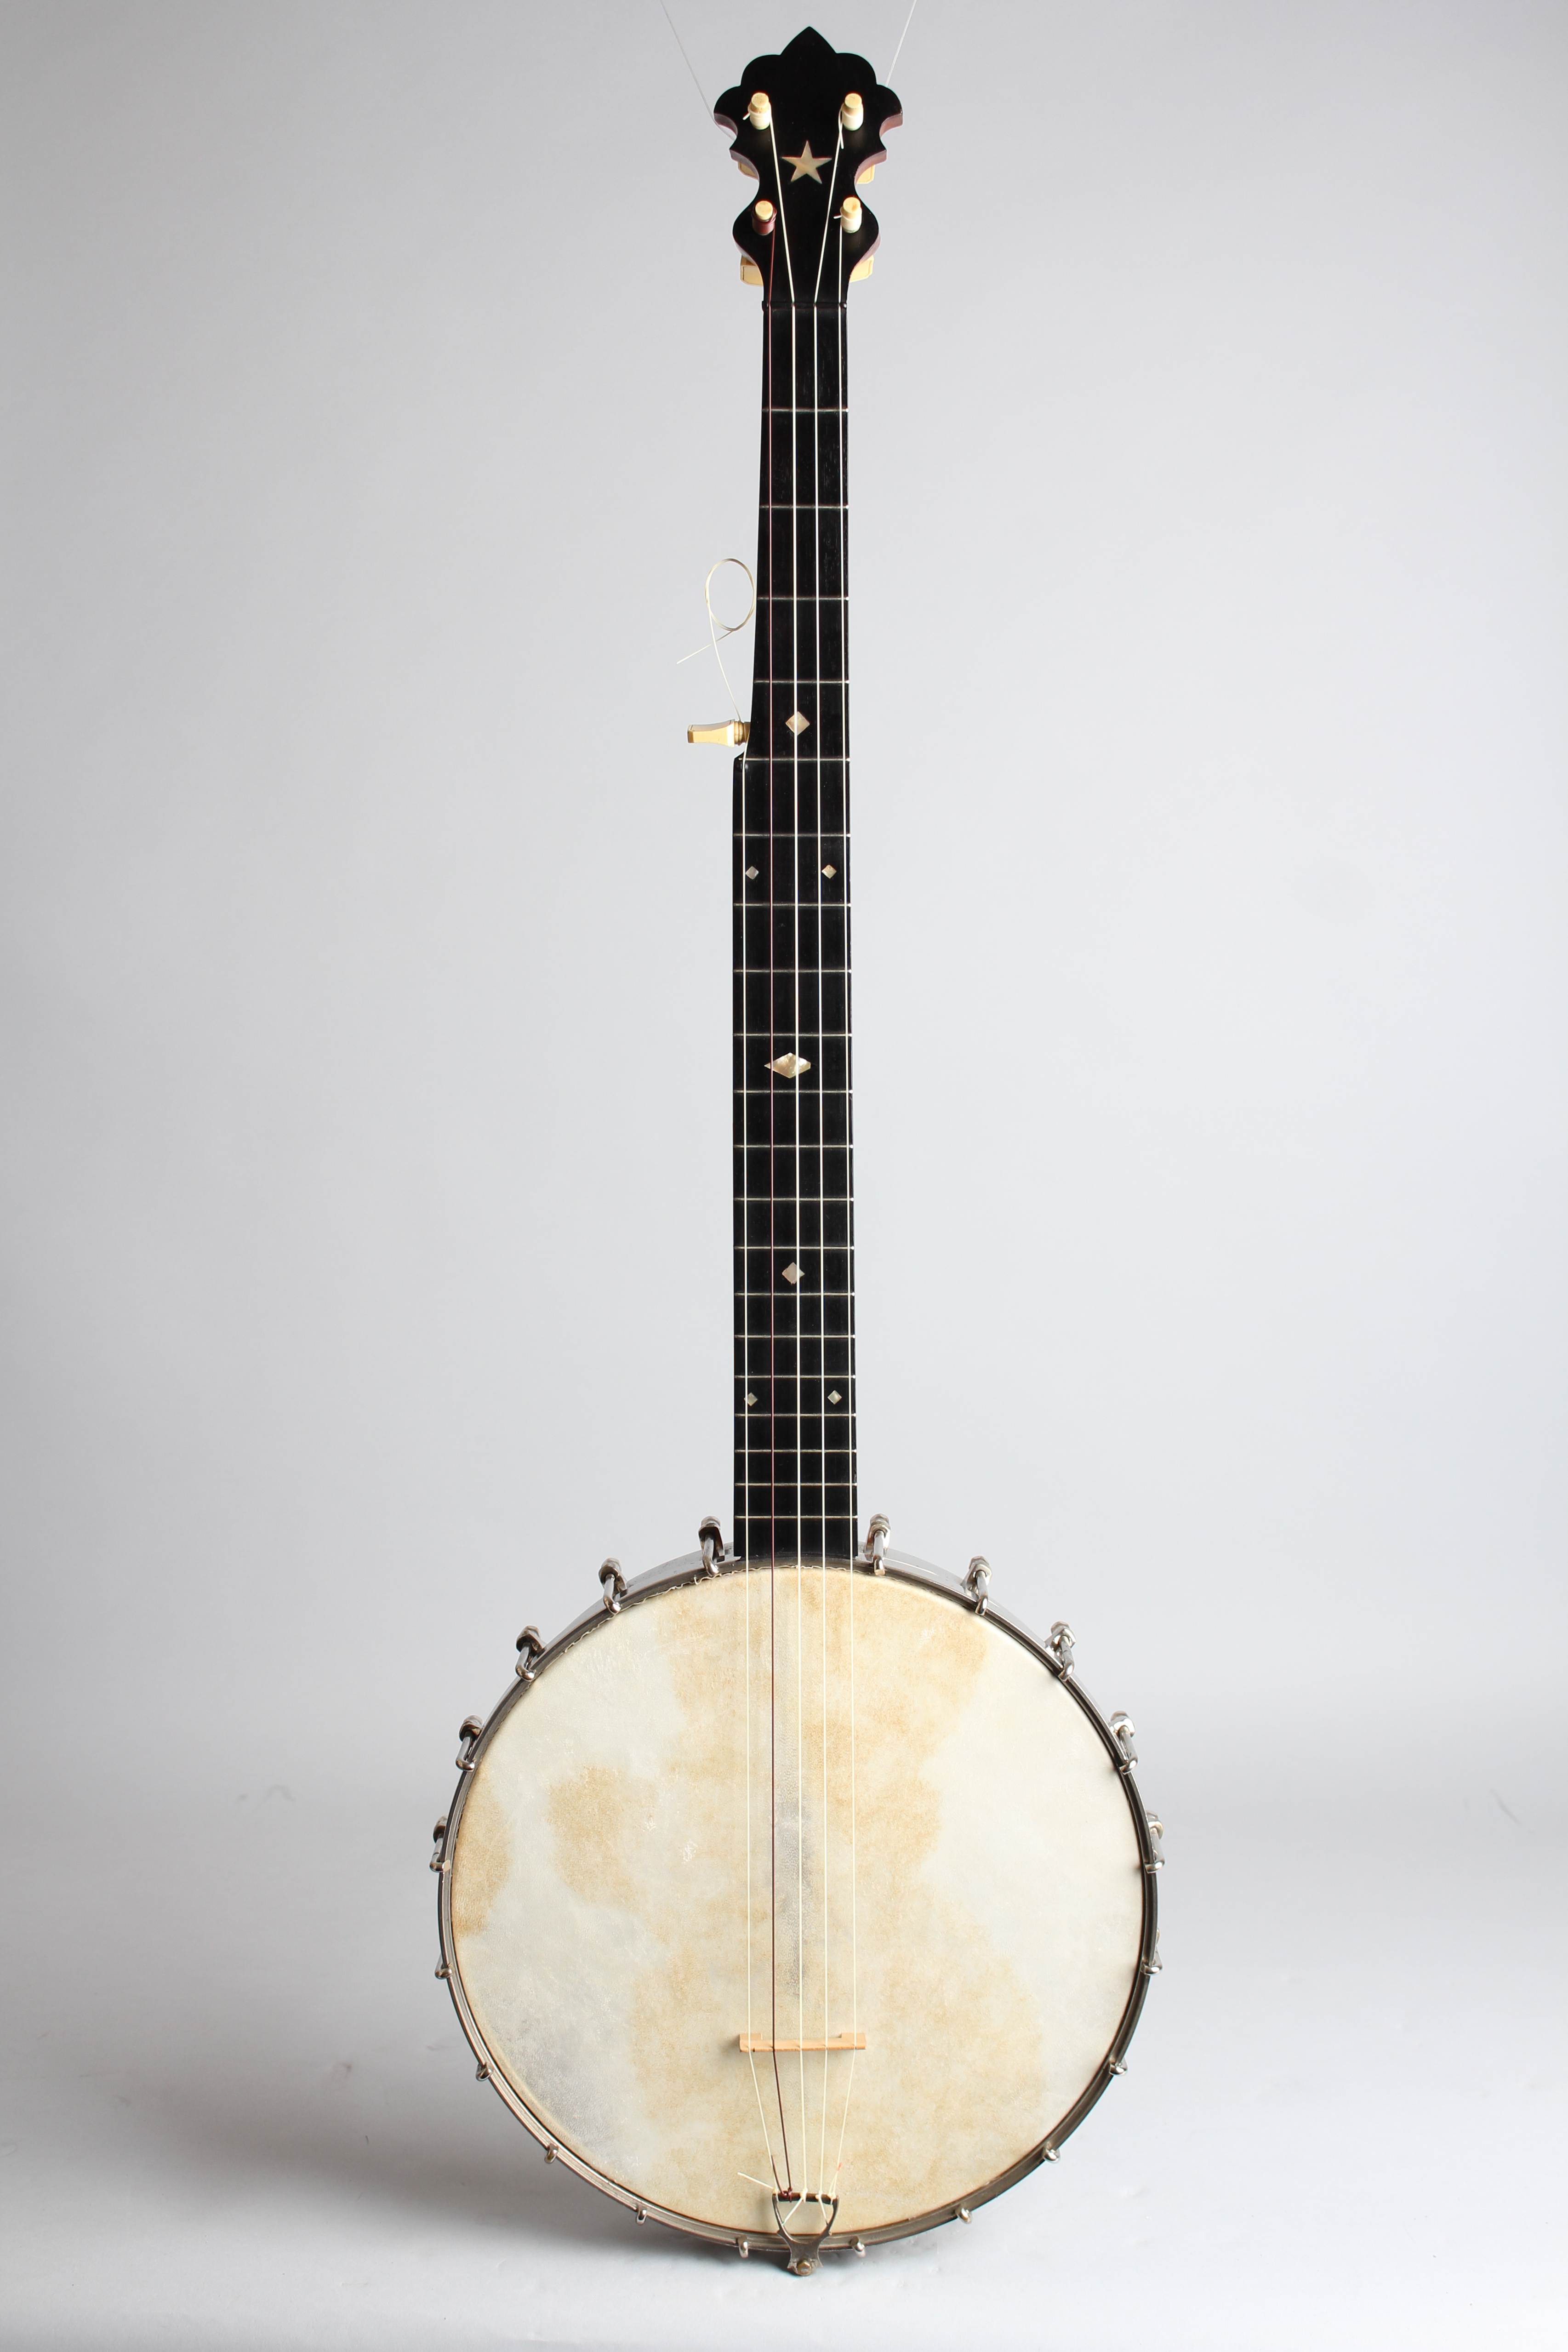 S. S. Stewart Universal Favorite #1 5 String Banjo (1894)